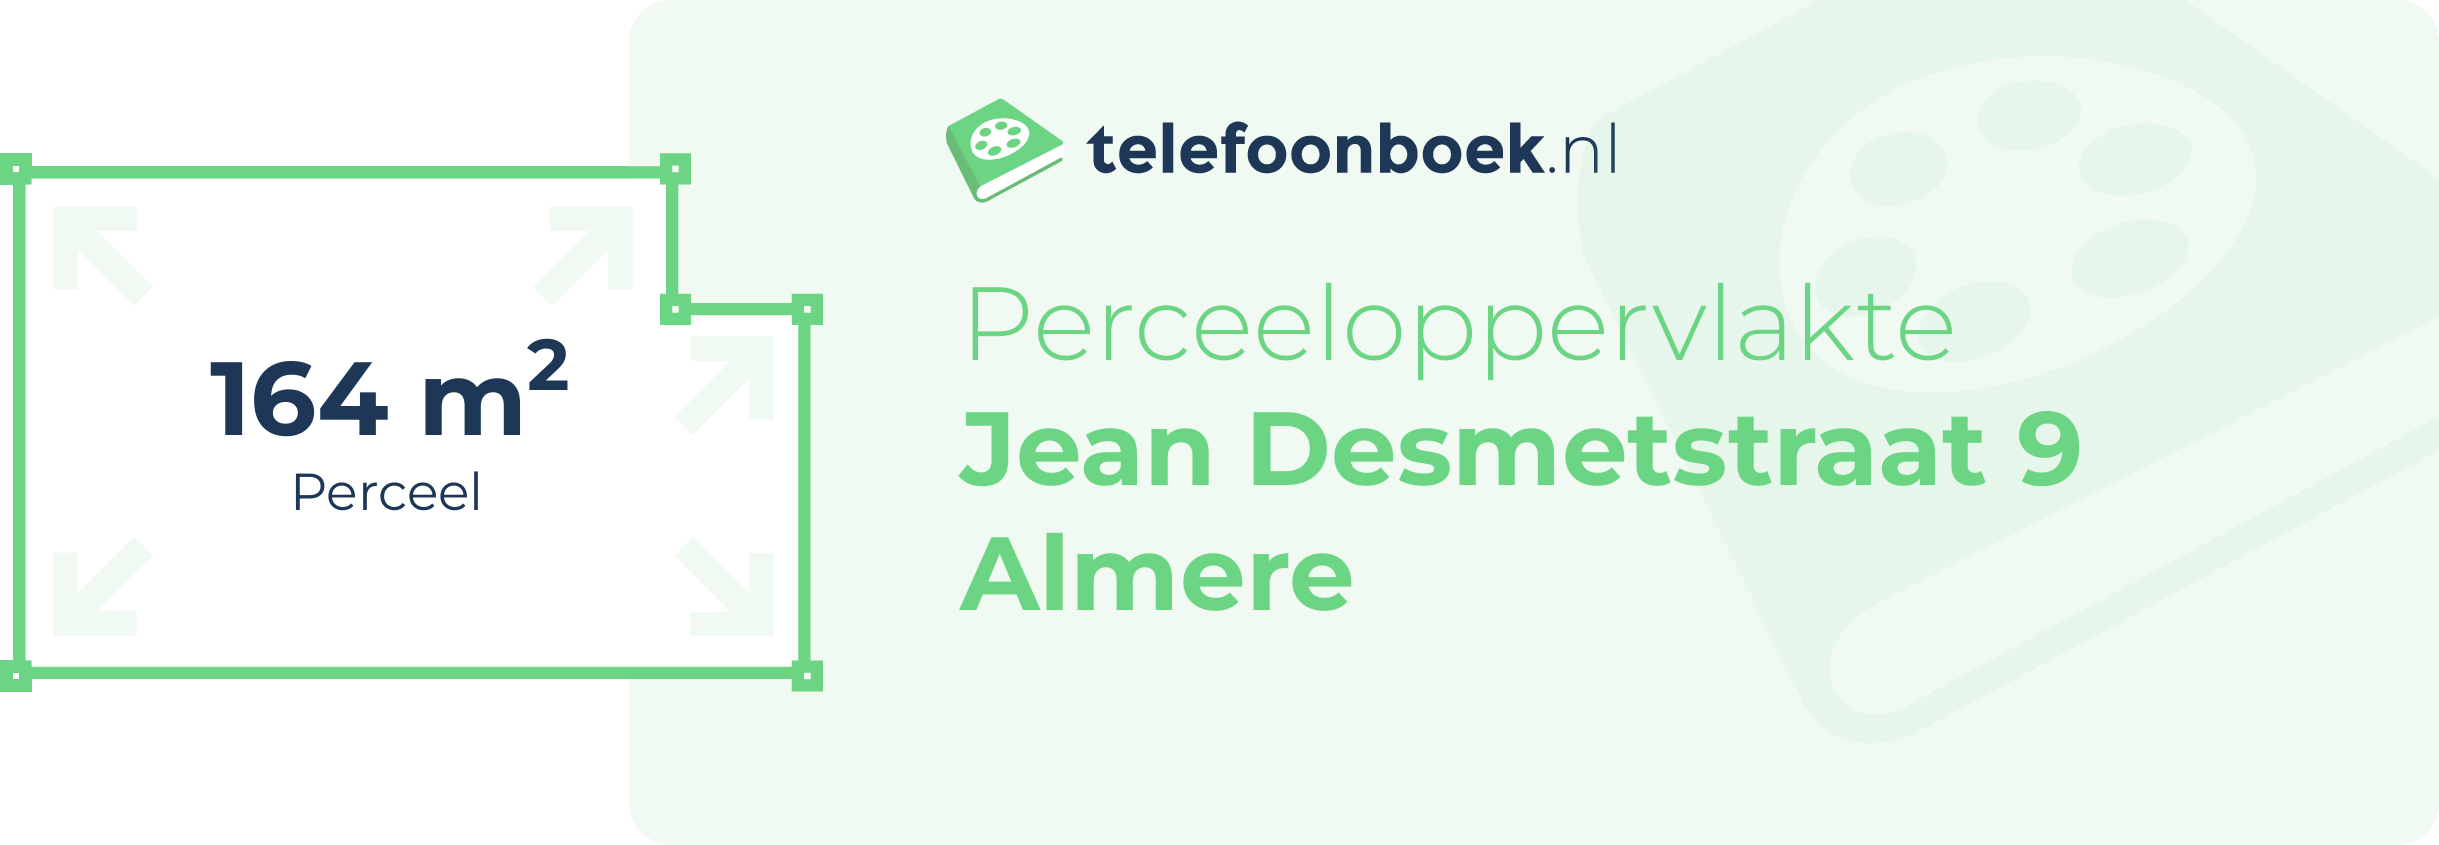 Perceeloppervlakte Jean Desmetstraat 9 Almere